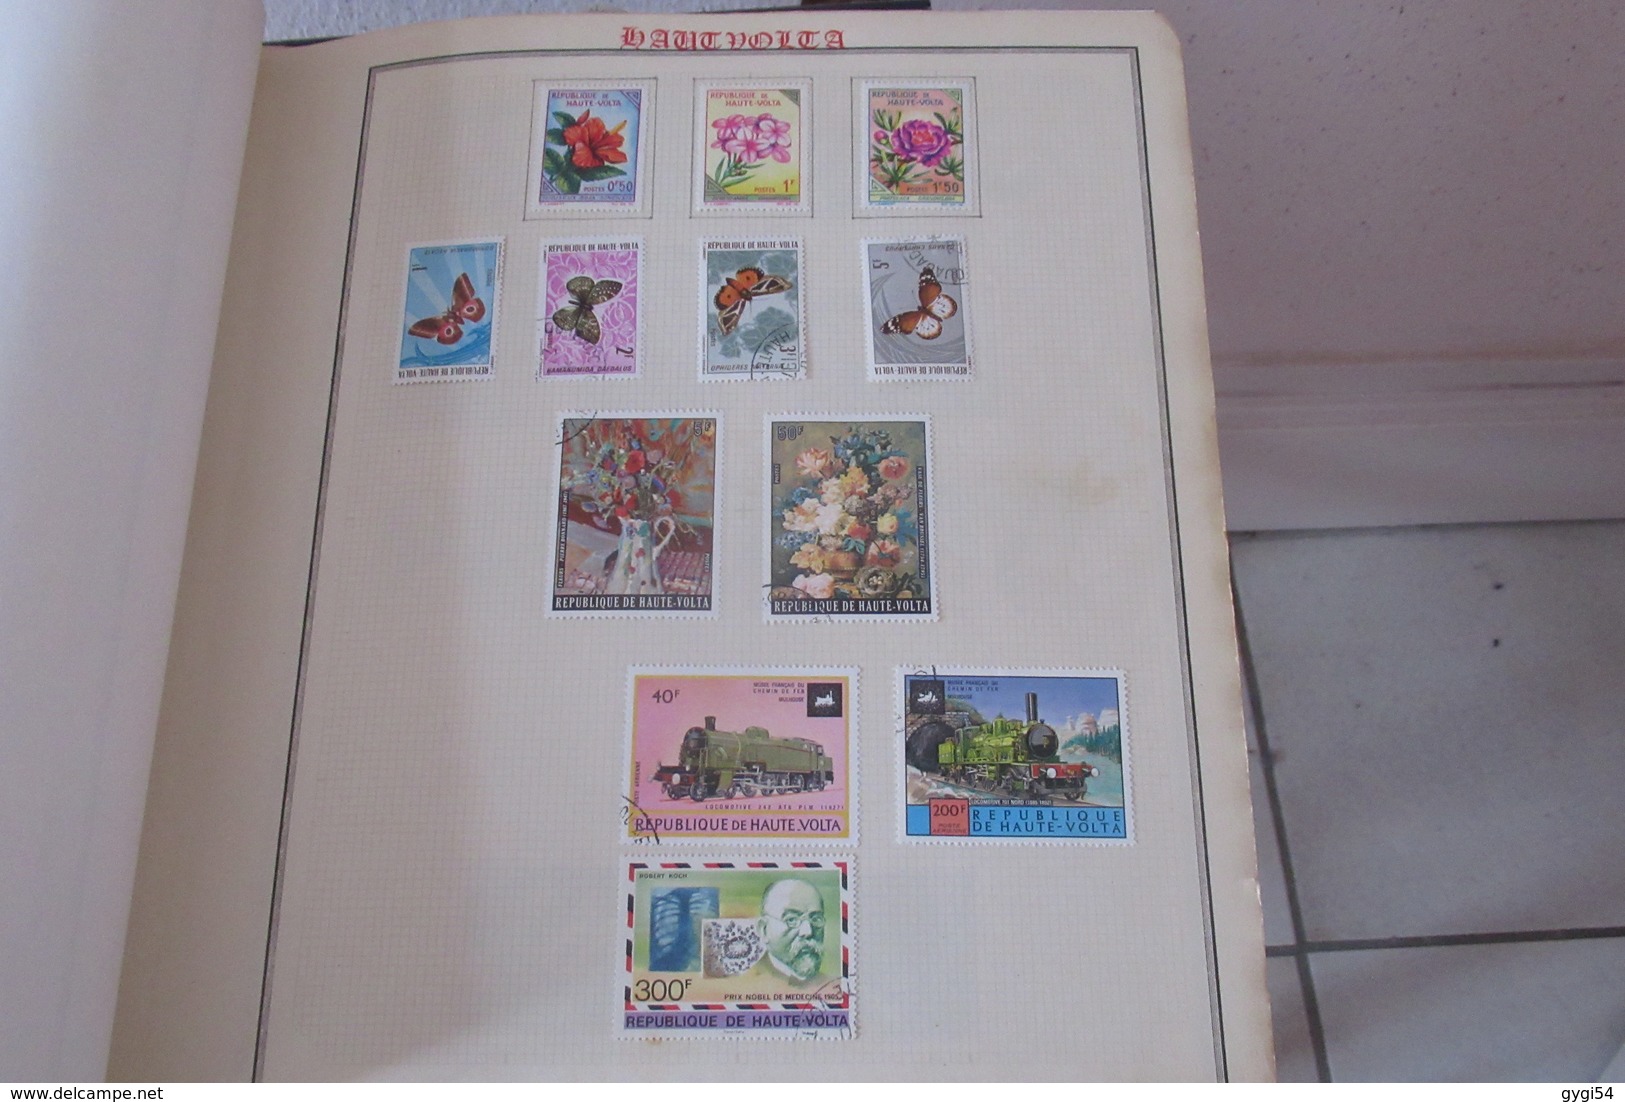 Collection de timbres divers  du Monde  dont Monaco    74  scans